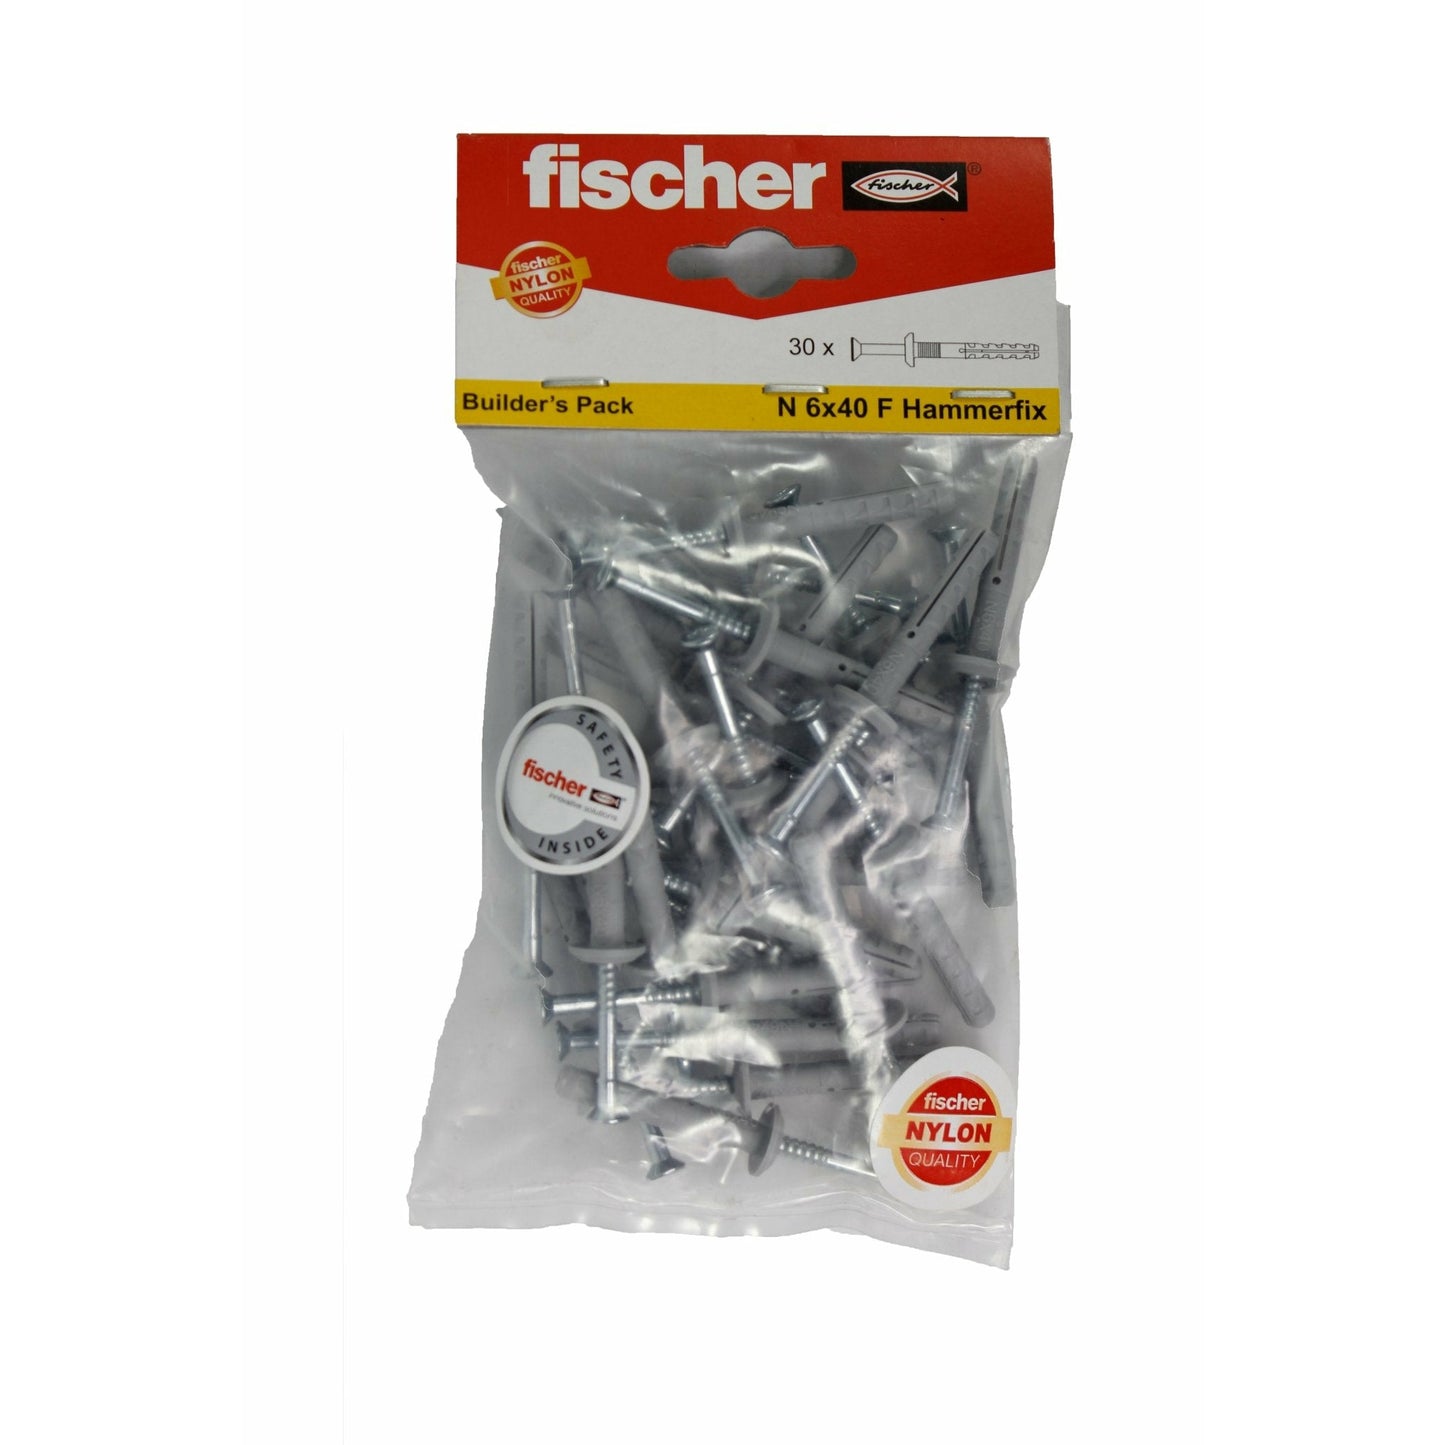 Fischer N 6x40 Hammerfix - Al's Hardware